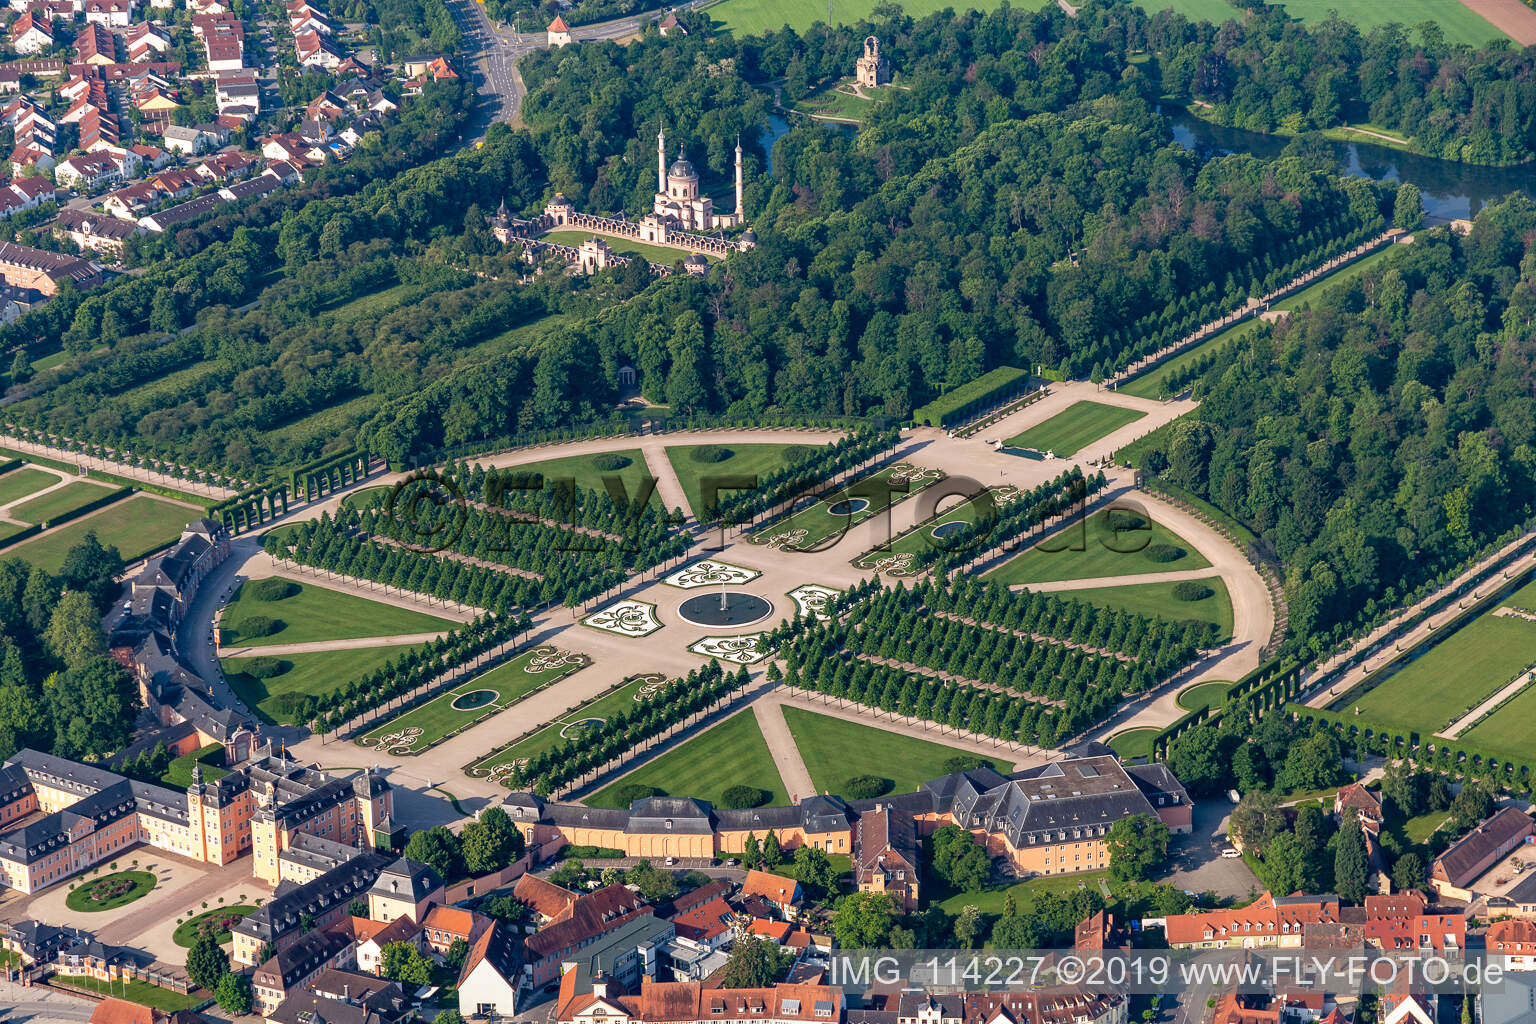 Blick auf das Schloss Schwetzingen und den französische Barockgarten in Schwetzingen. Das Schloss diente den pfälzischen Kurfürsten als Sommerresidenz und wurde in seiner heutigen Form ab dem Jahr 1697 errichtet im Bundesland Baden-Württemberg, Deutschland